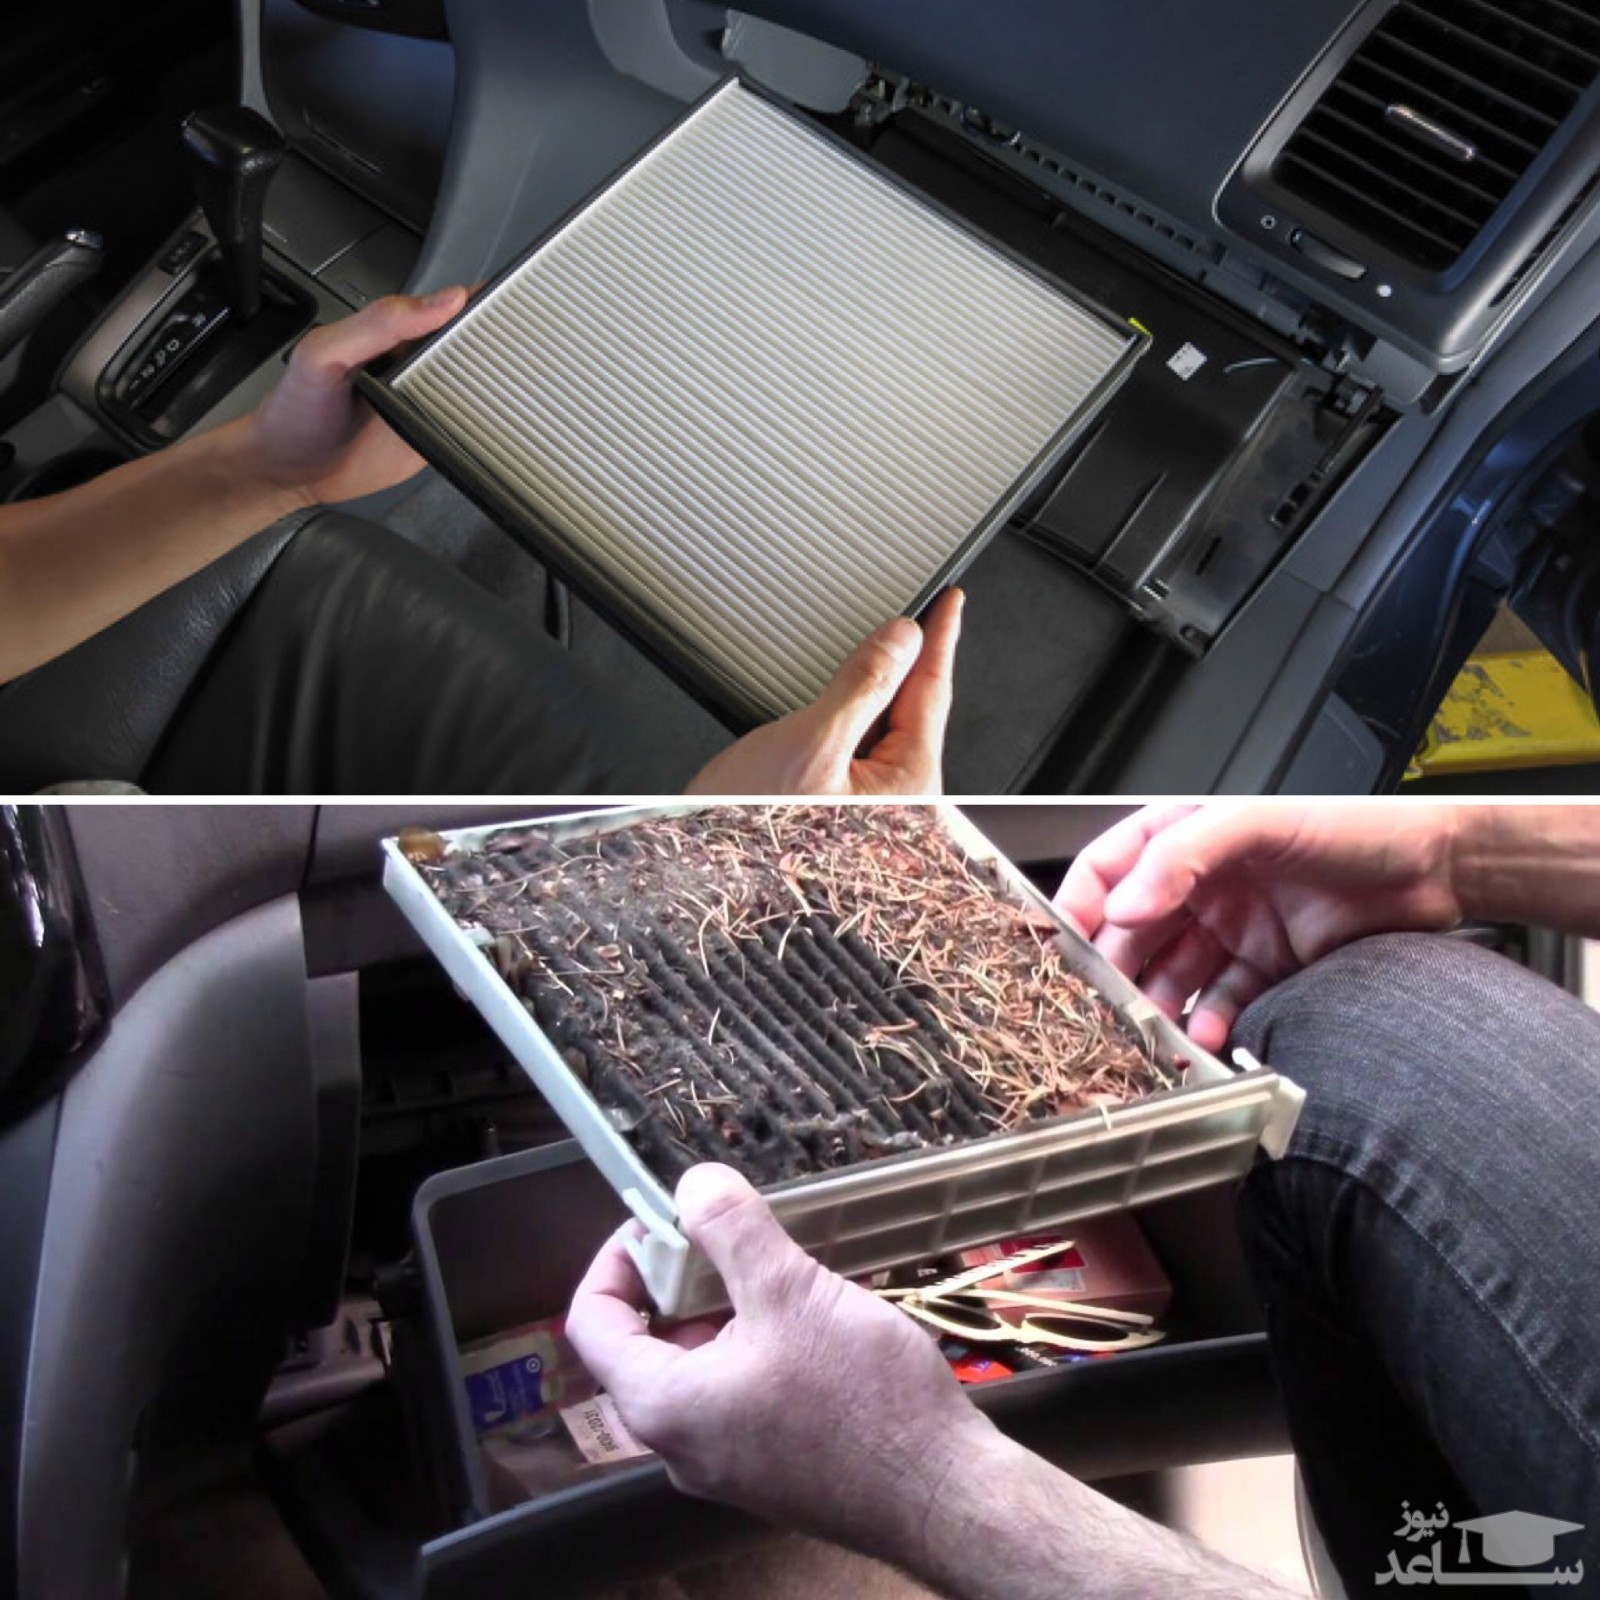 فیلتر هوای کابین خودرو را چگونه عوض کنیم؟